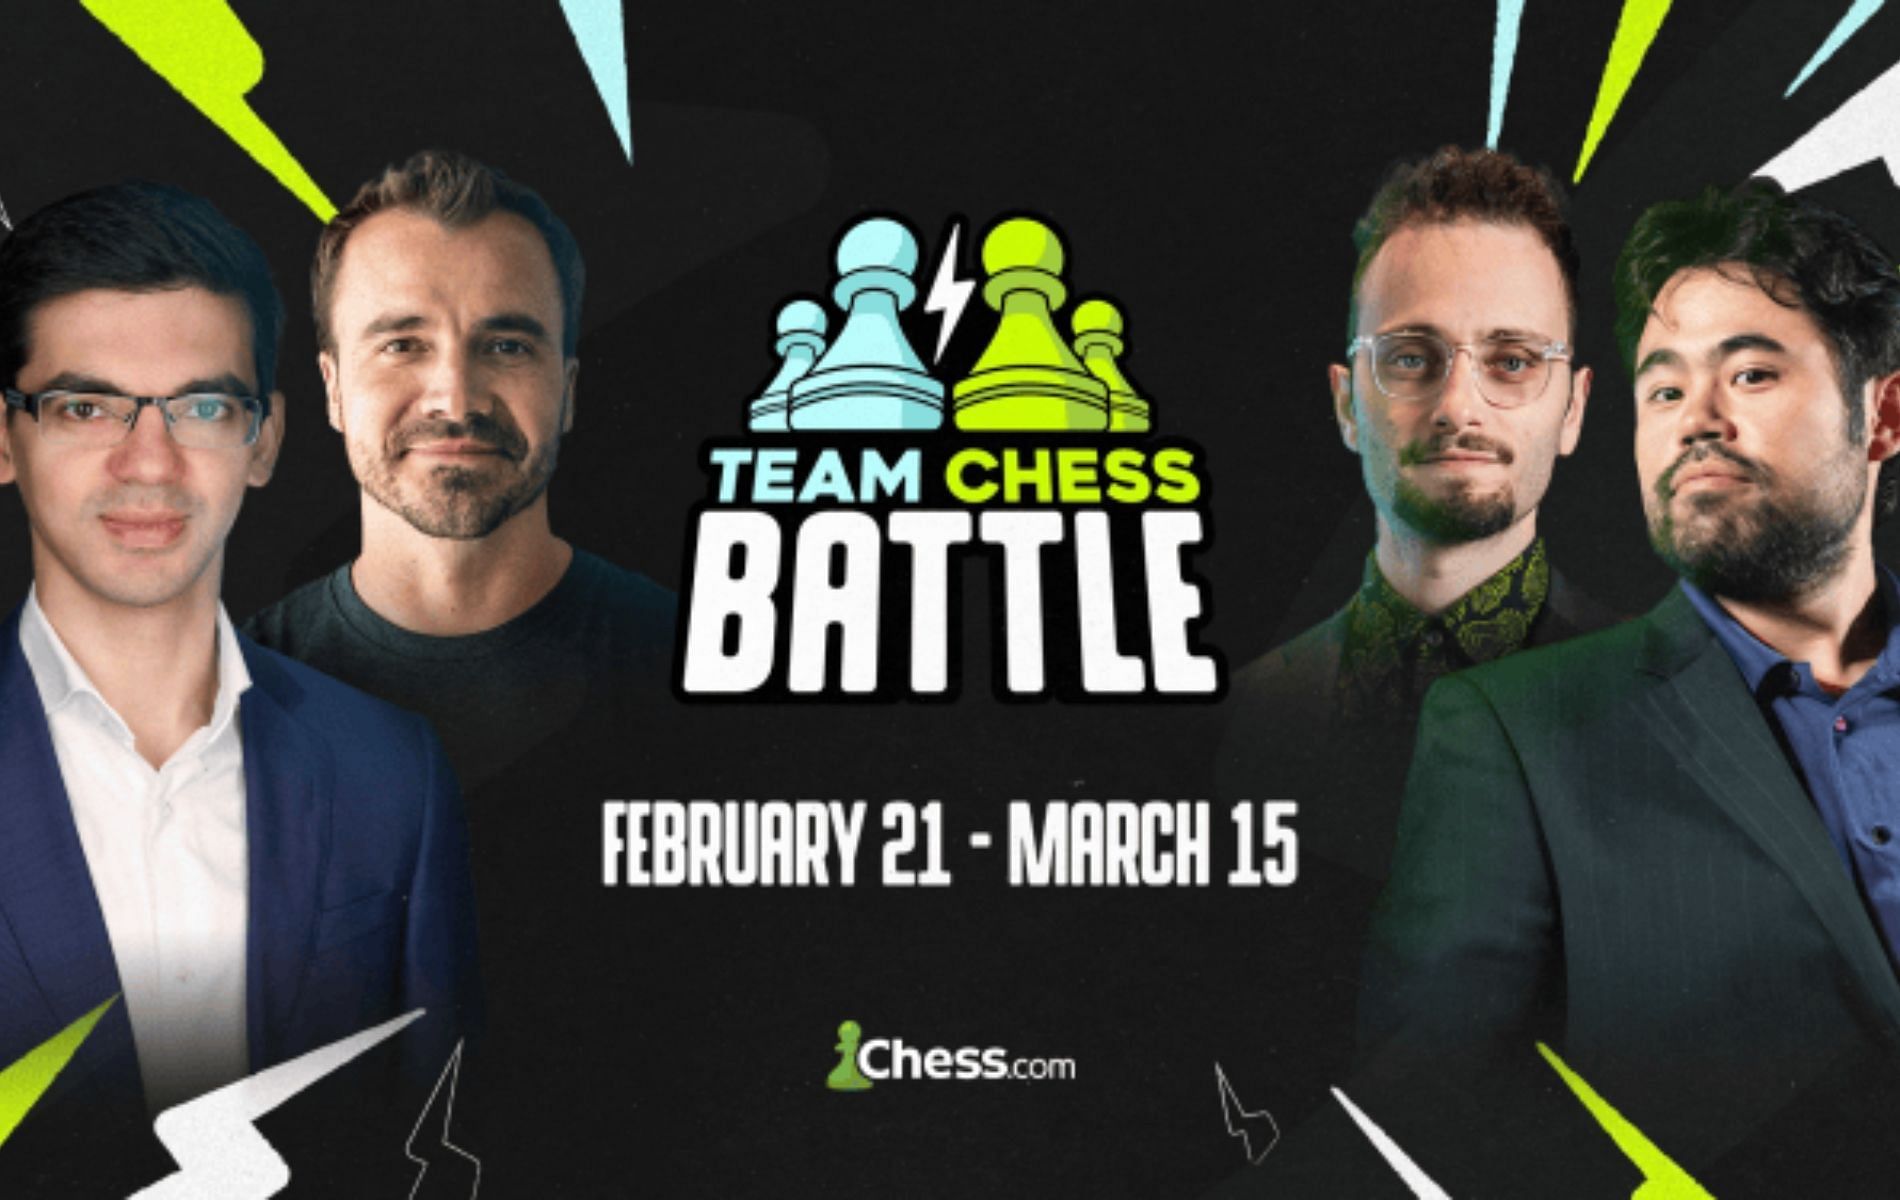 Chess.com announces new 2 v 2 tournament (Image via Chess.com)